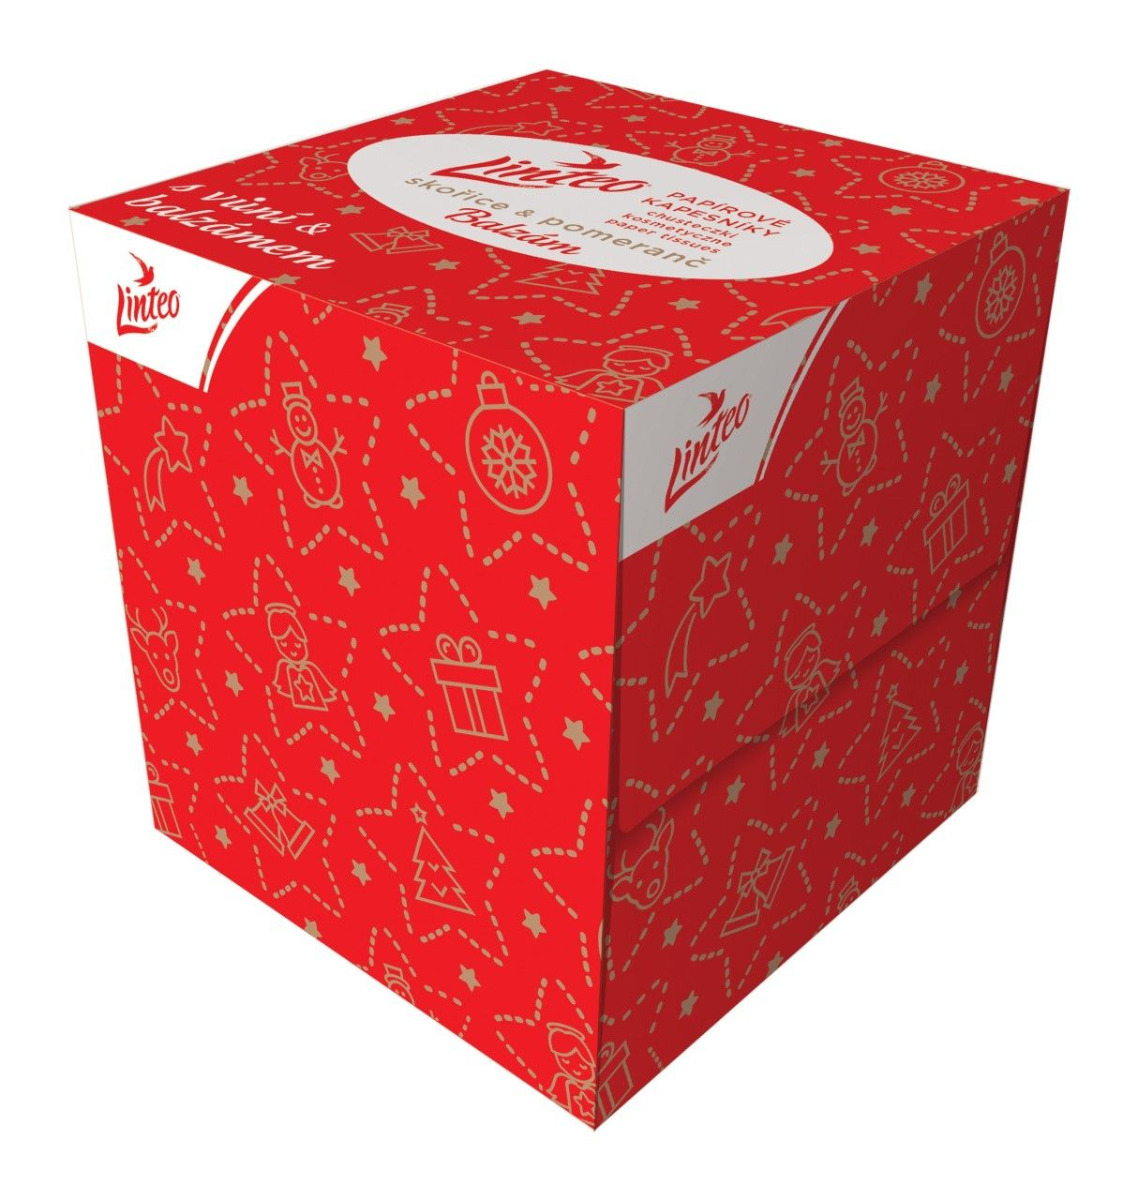 Linteo Papírové kapesníky 3-vrstvé vánoční box 60 ks Linteo